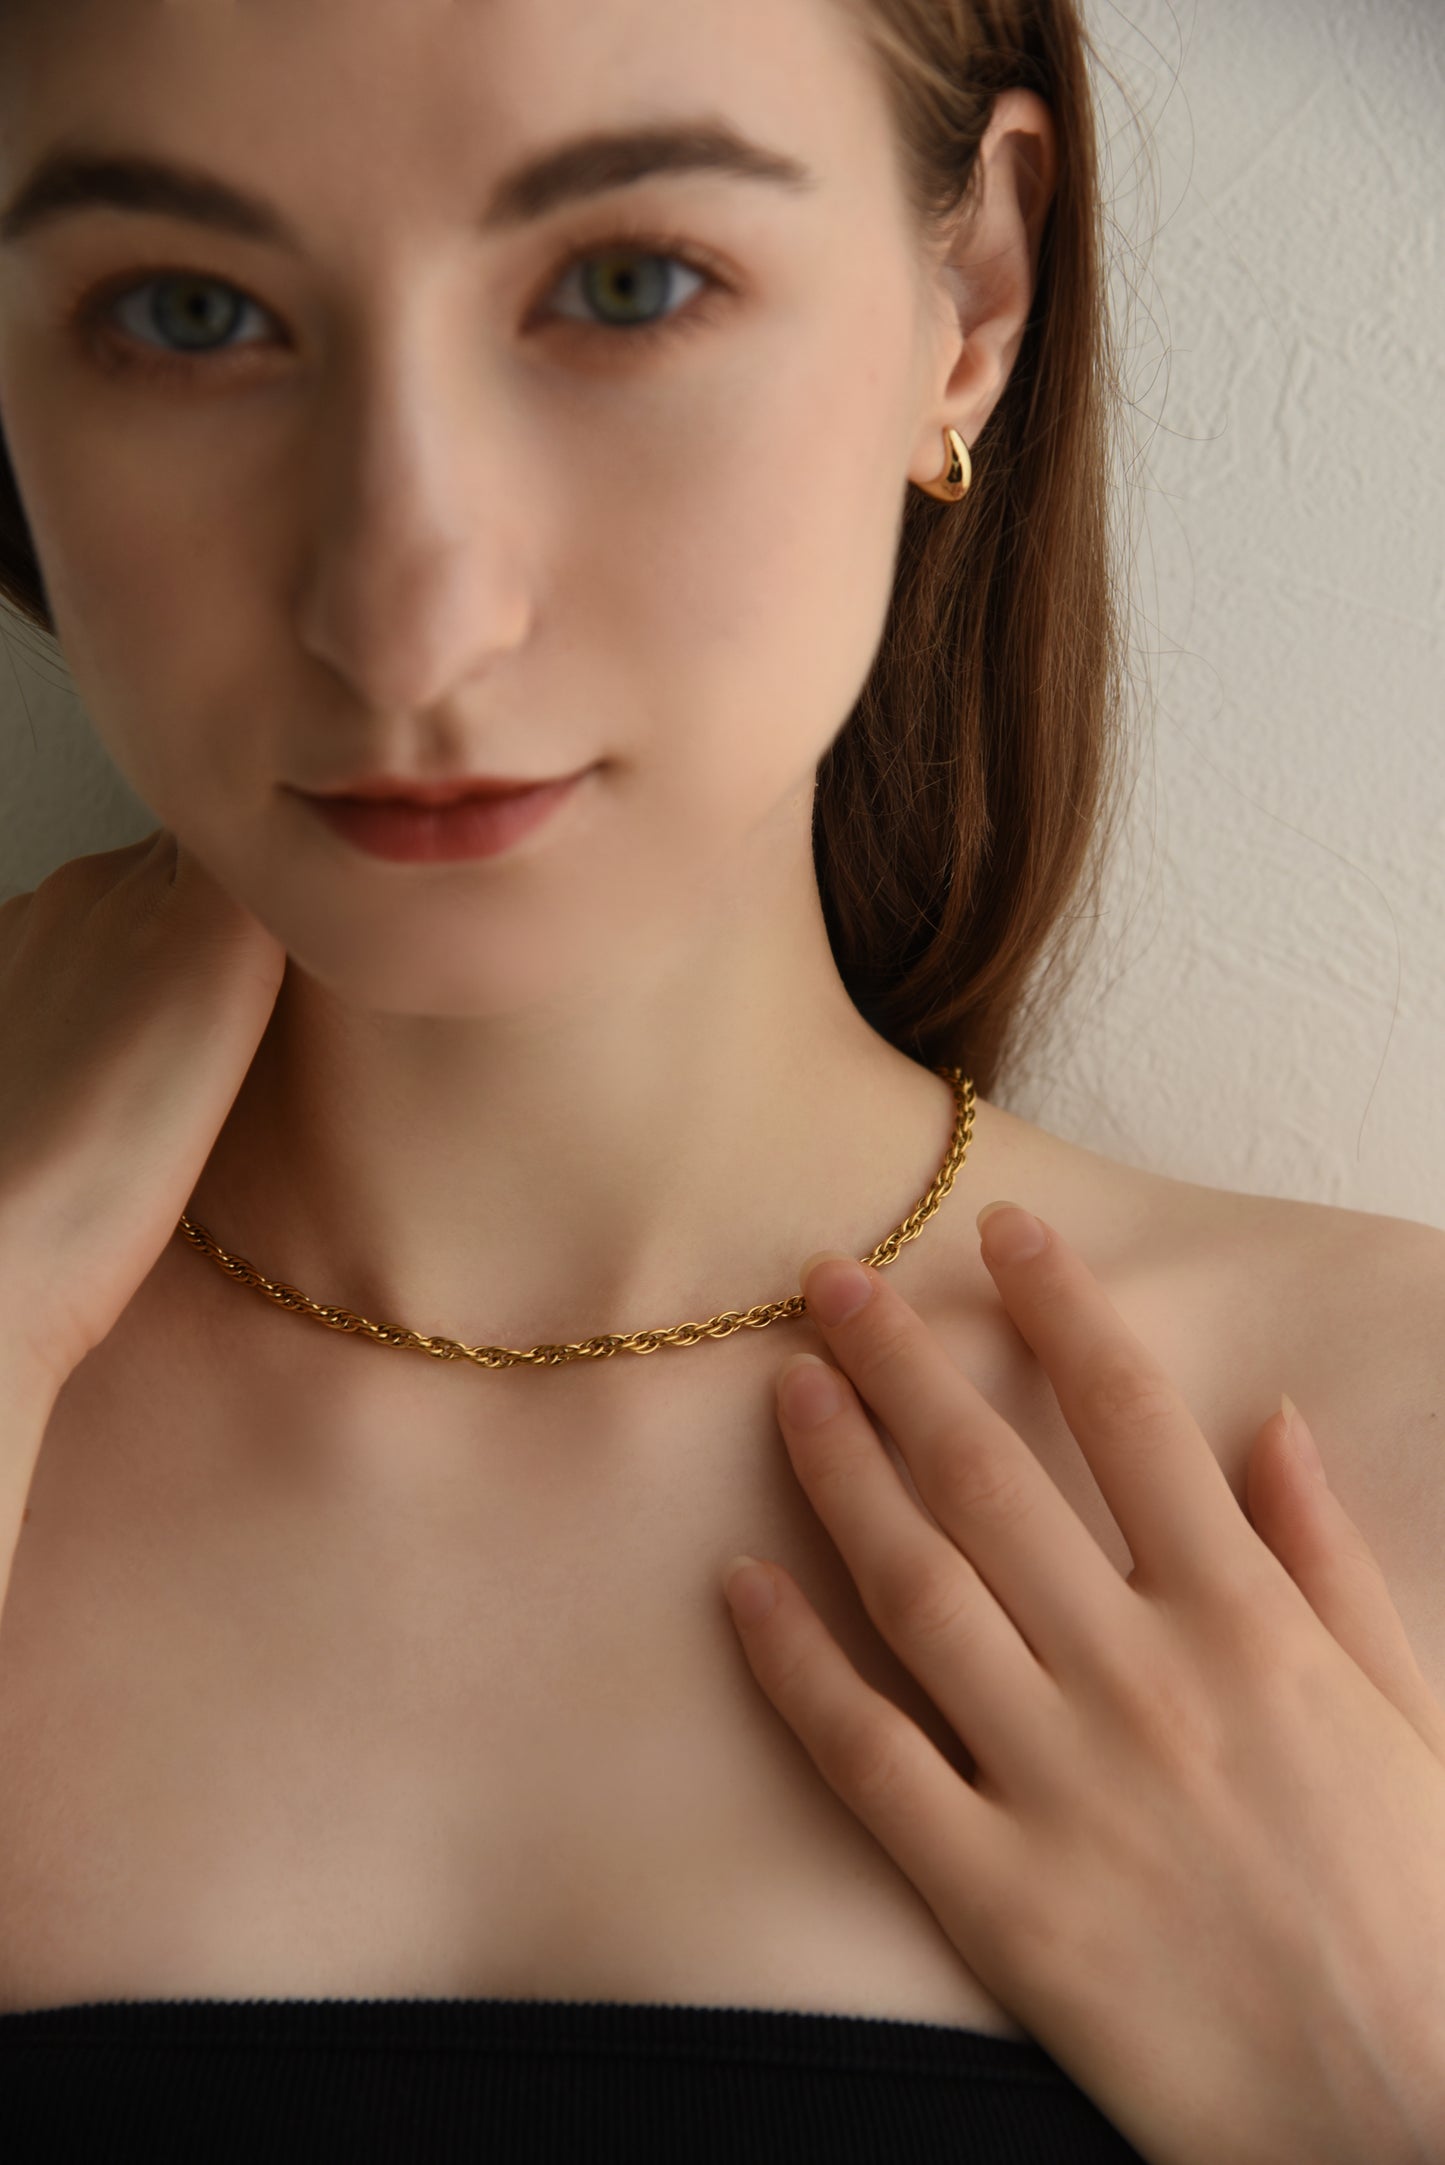 RC amulet plain chain necklace